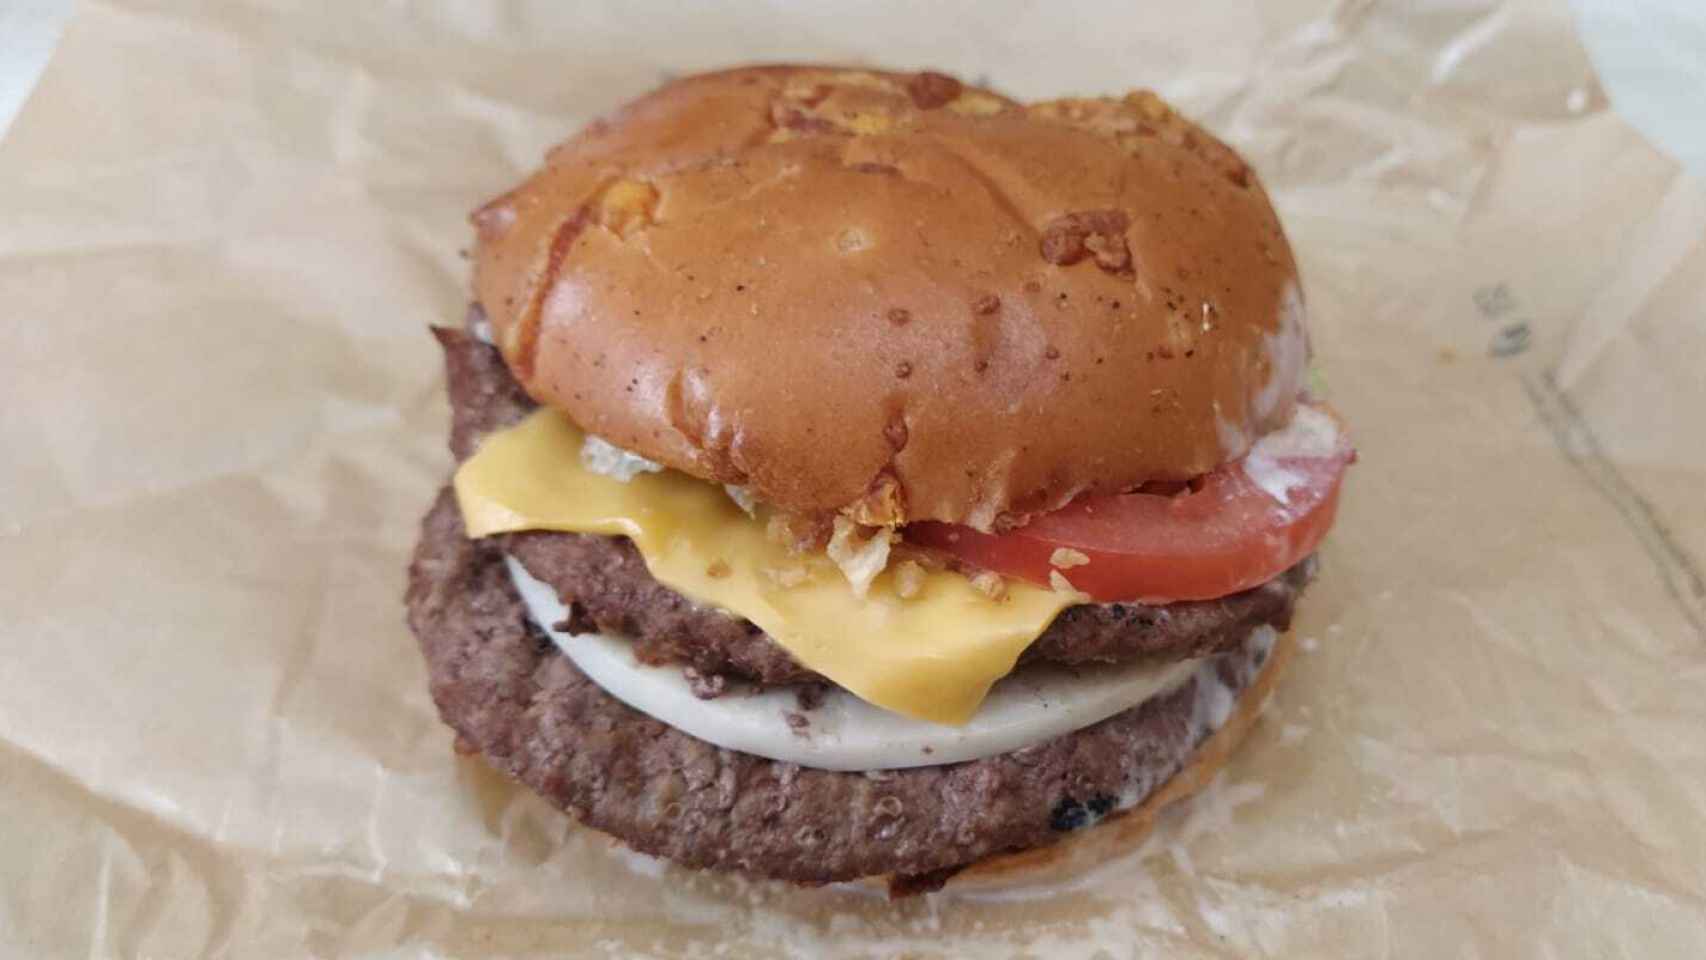 La hamburguesa 'Queen Cheese', una edición limitada de Burger King que cuesta 6,99 euros.